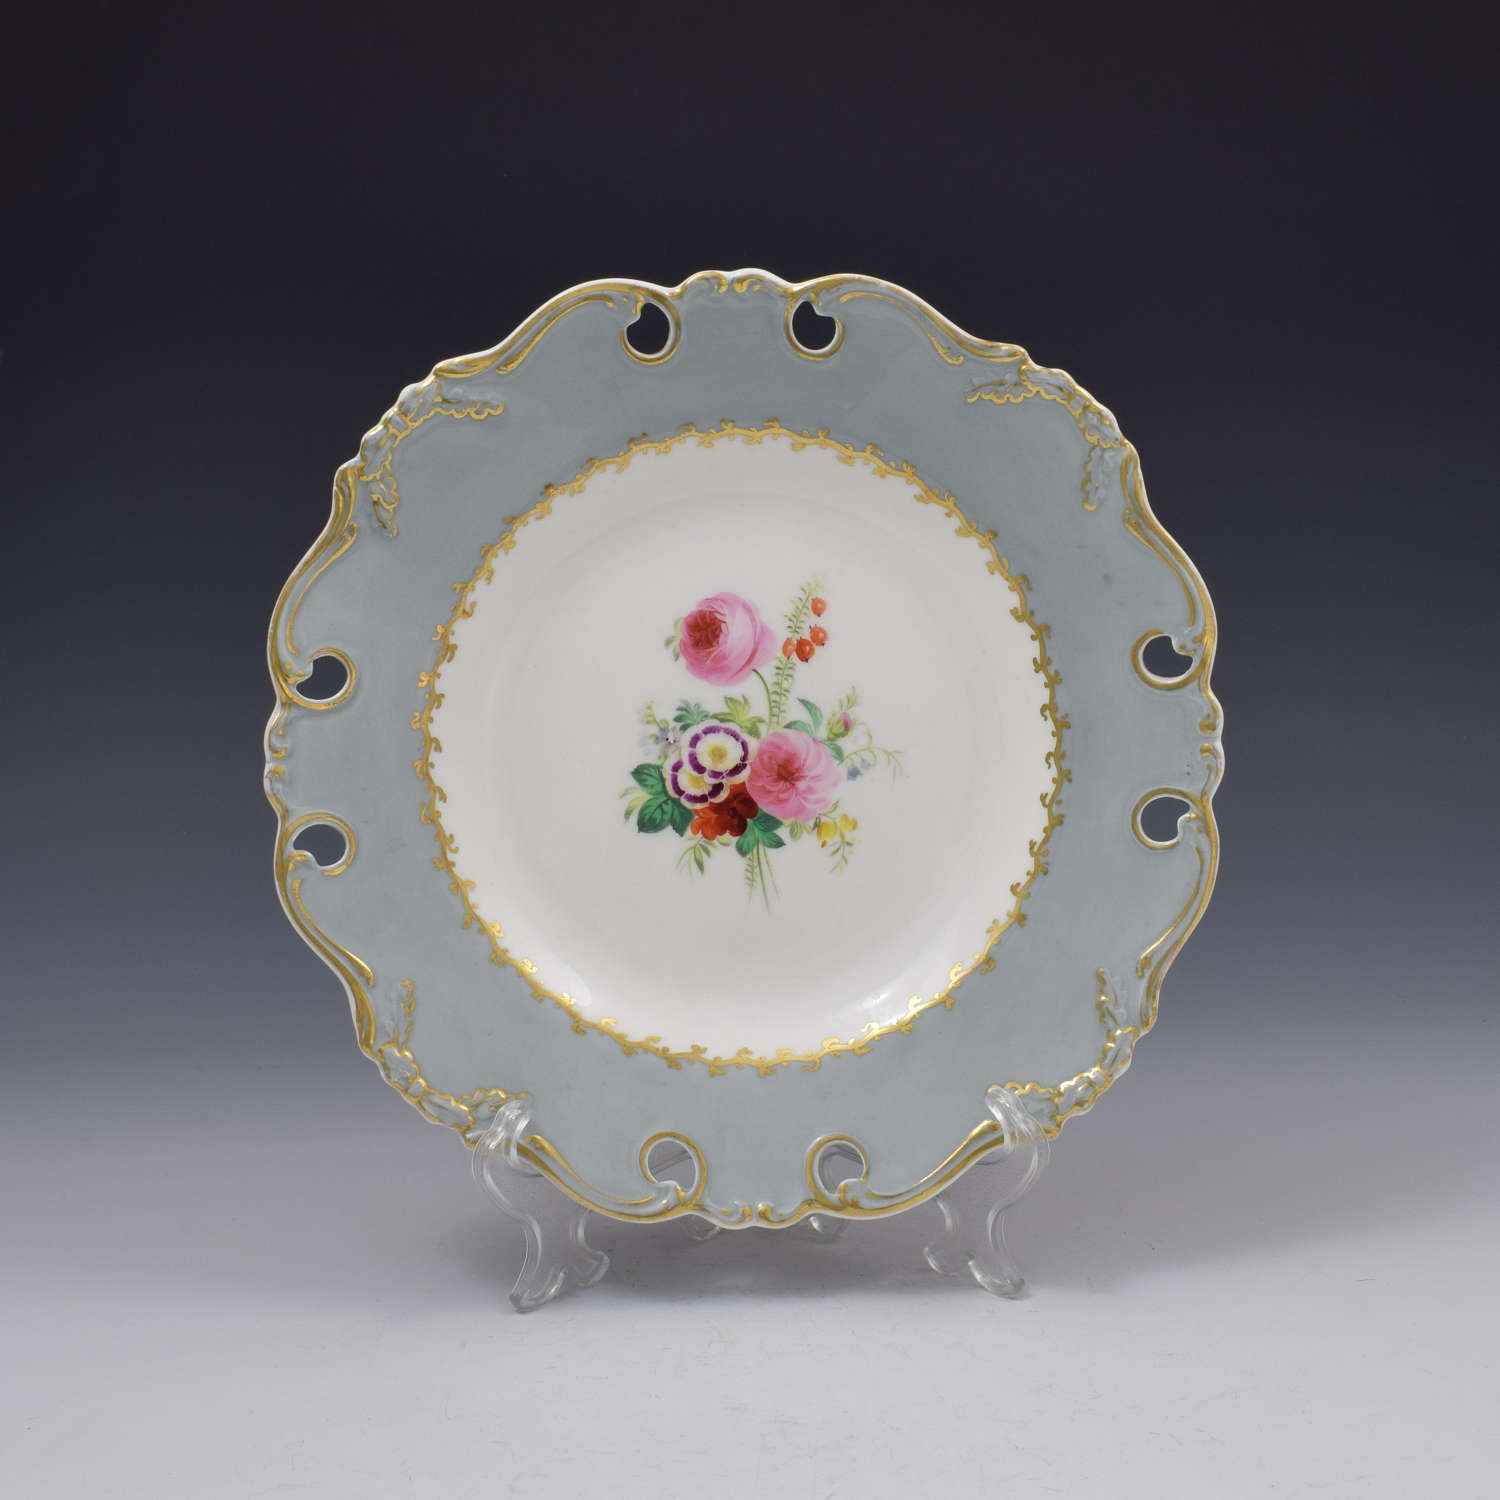 John Ridgway Porcelain Dessert Plate 6/7151 c.1850